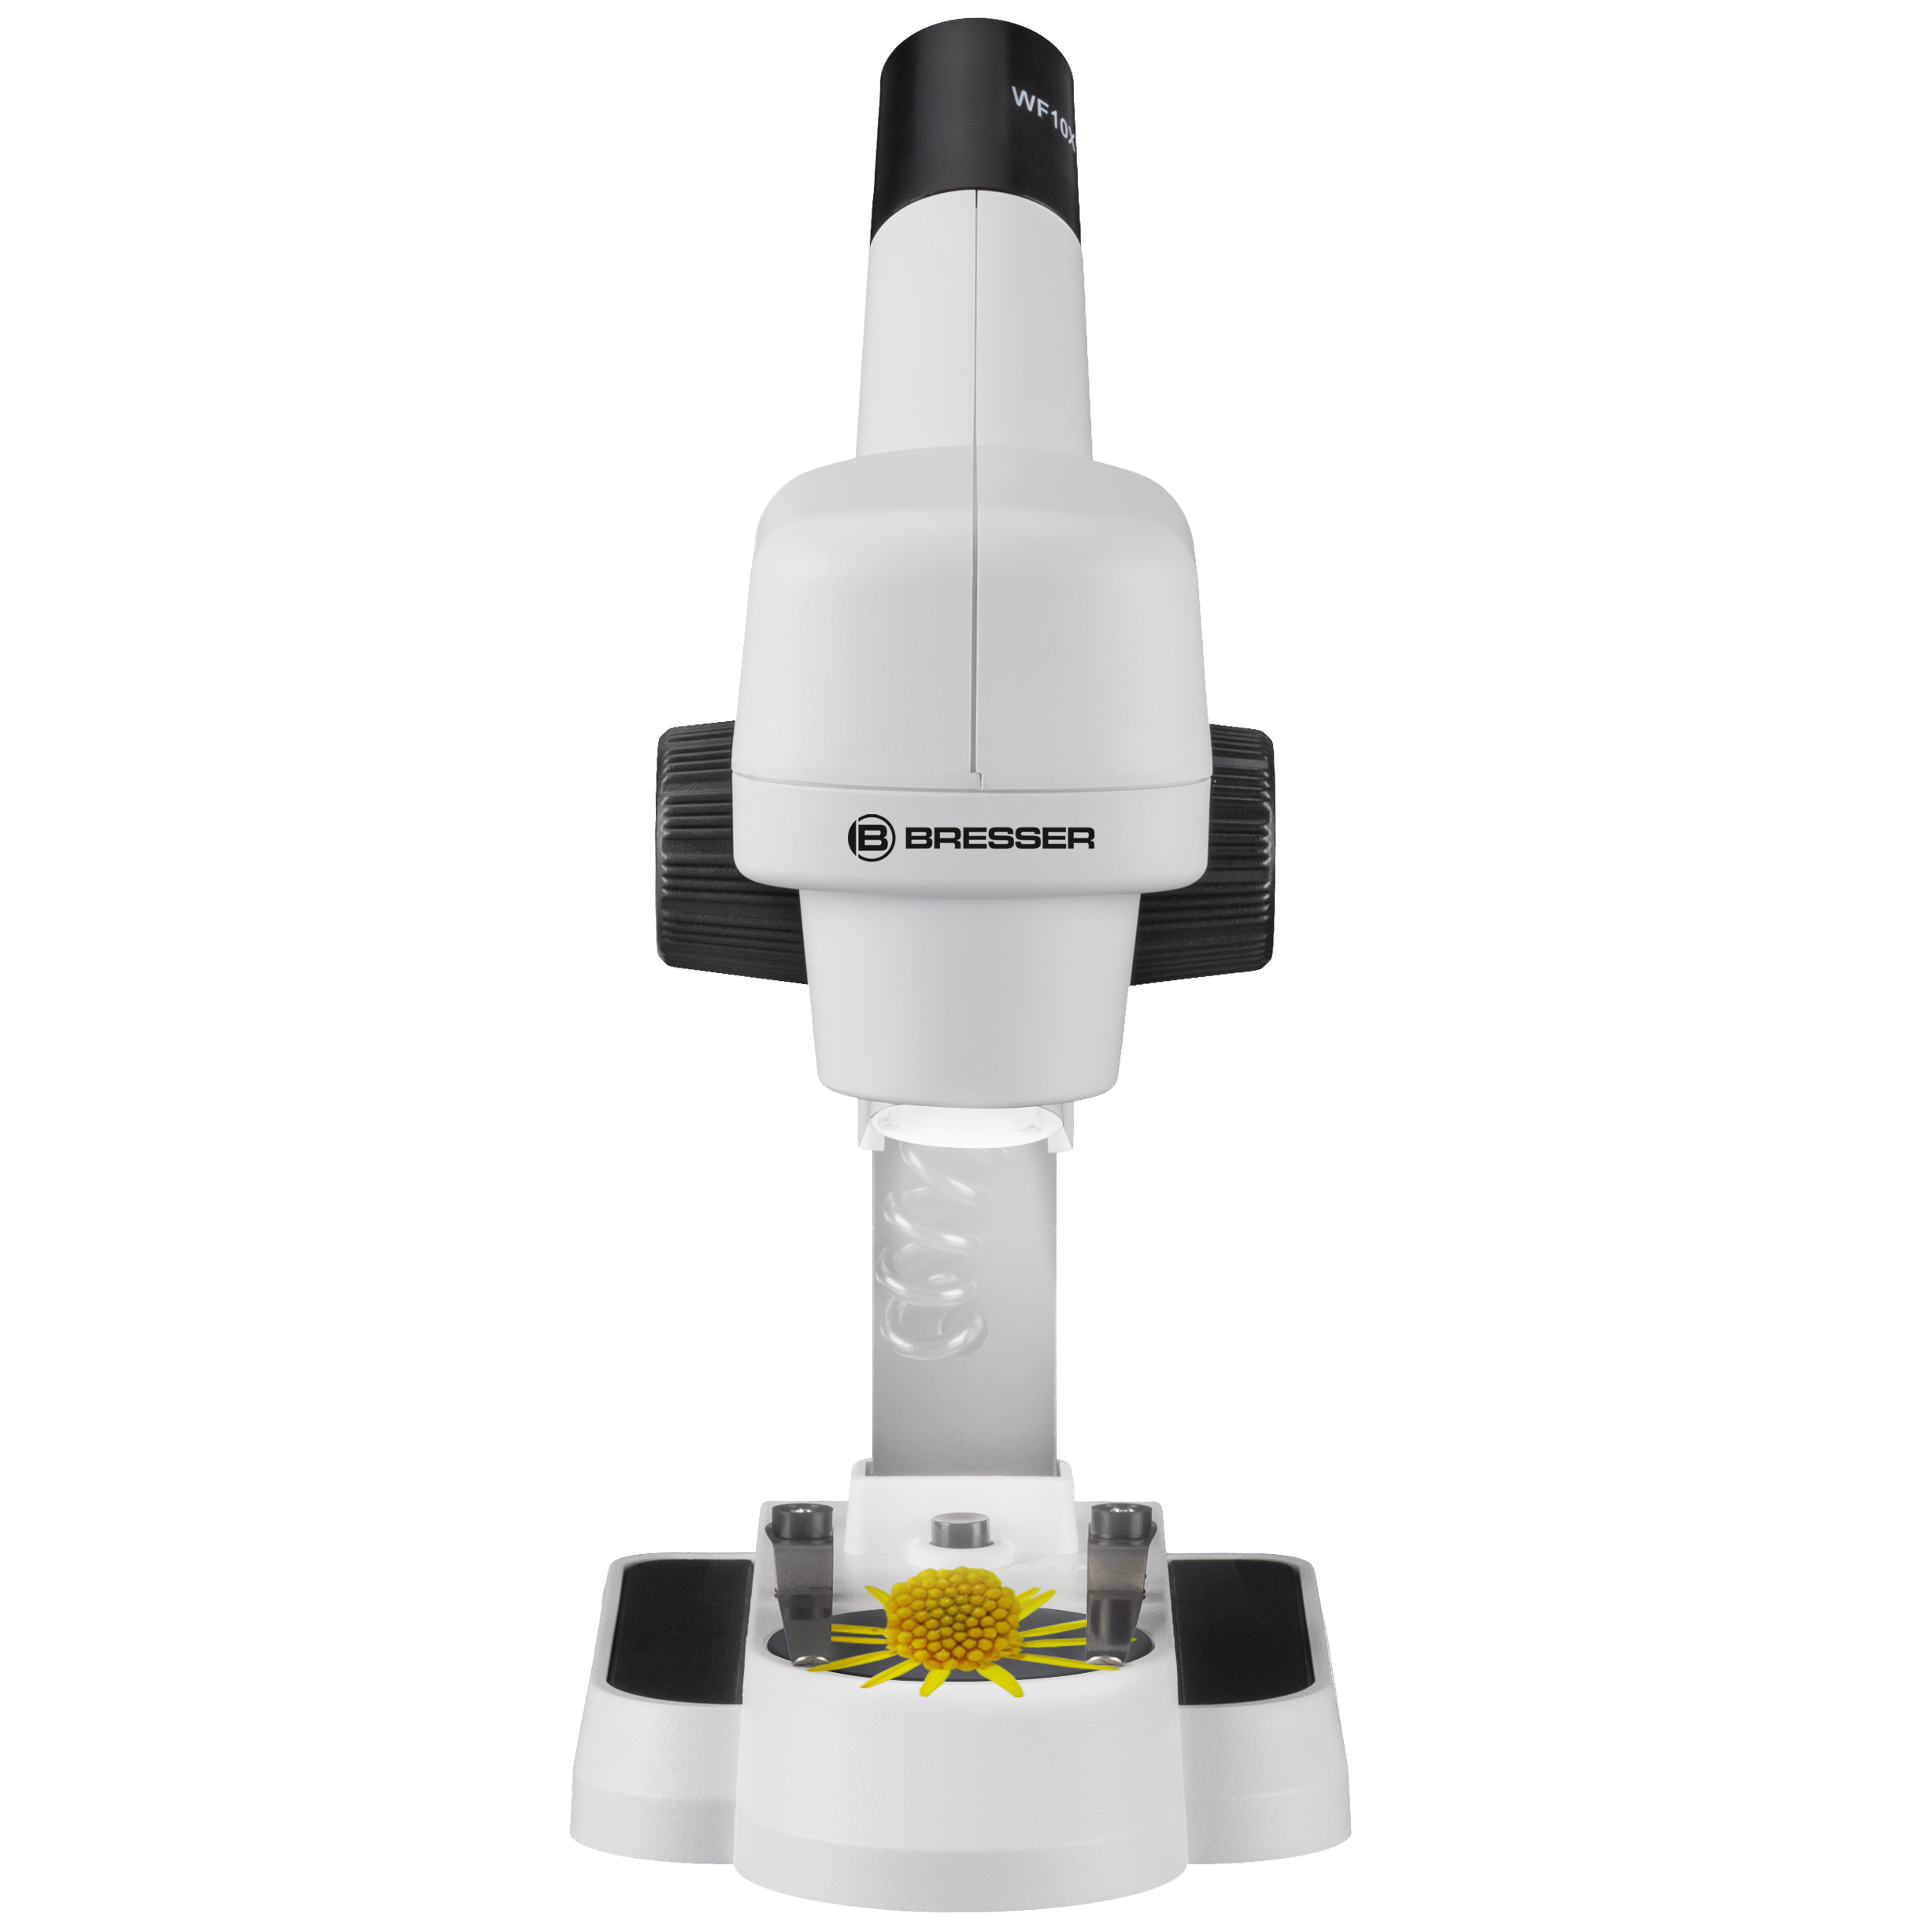 BRESSER JUNIOR Auflicht-Mikroskop mit 20-facher Vergrößerung - Refurbished